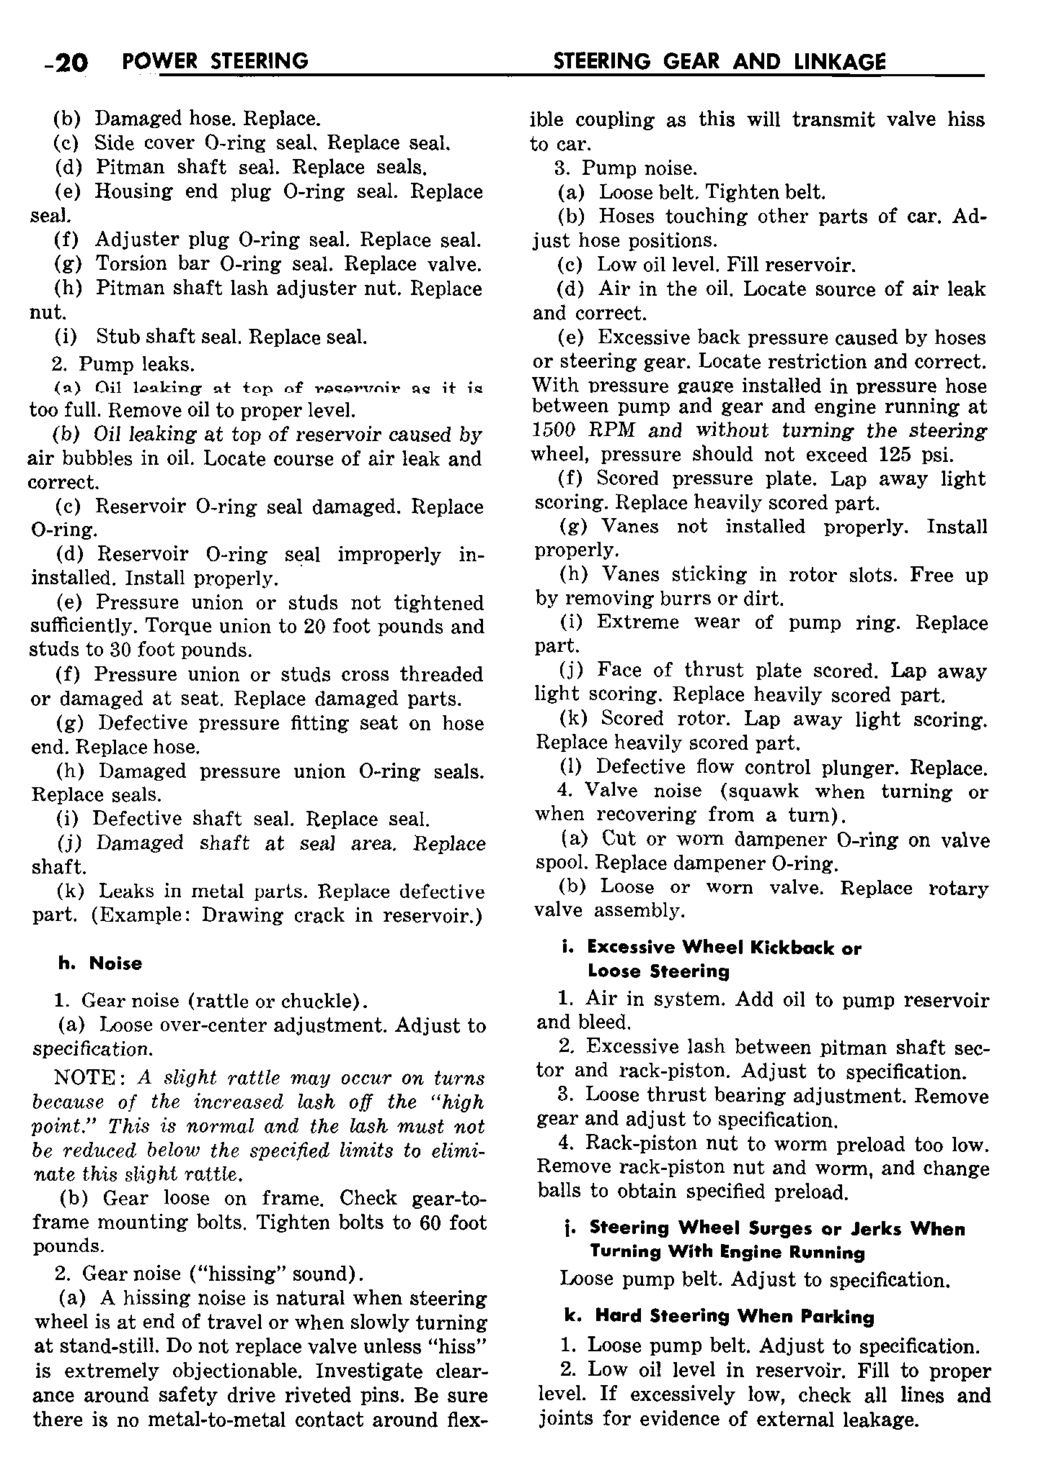 n_09 1959 Buick Shop Manual - Steering-020-020.jpg